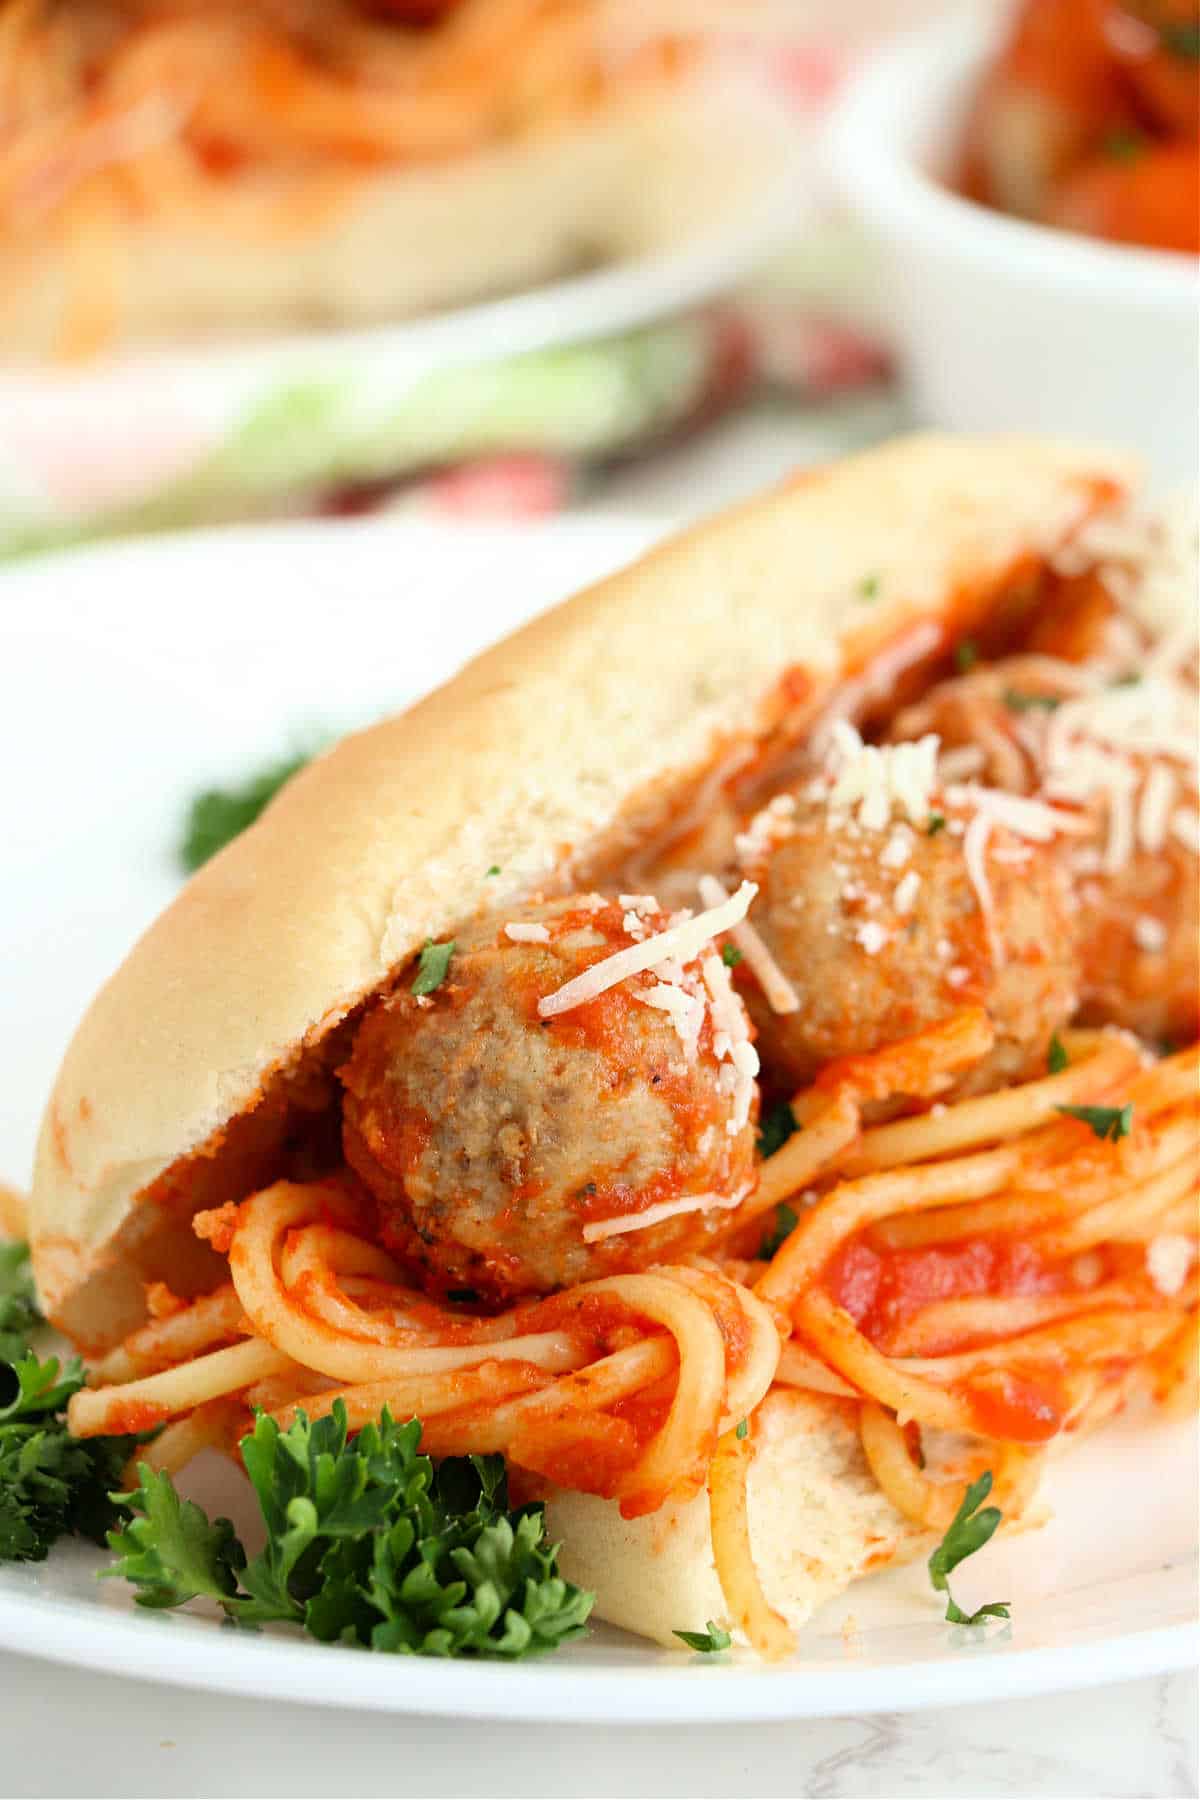 Leftover Spaghetti Sandwich – Spaghetti and Meatball Sandwich [Video]